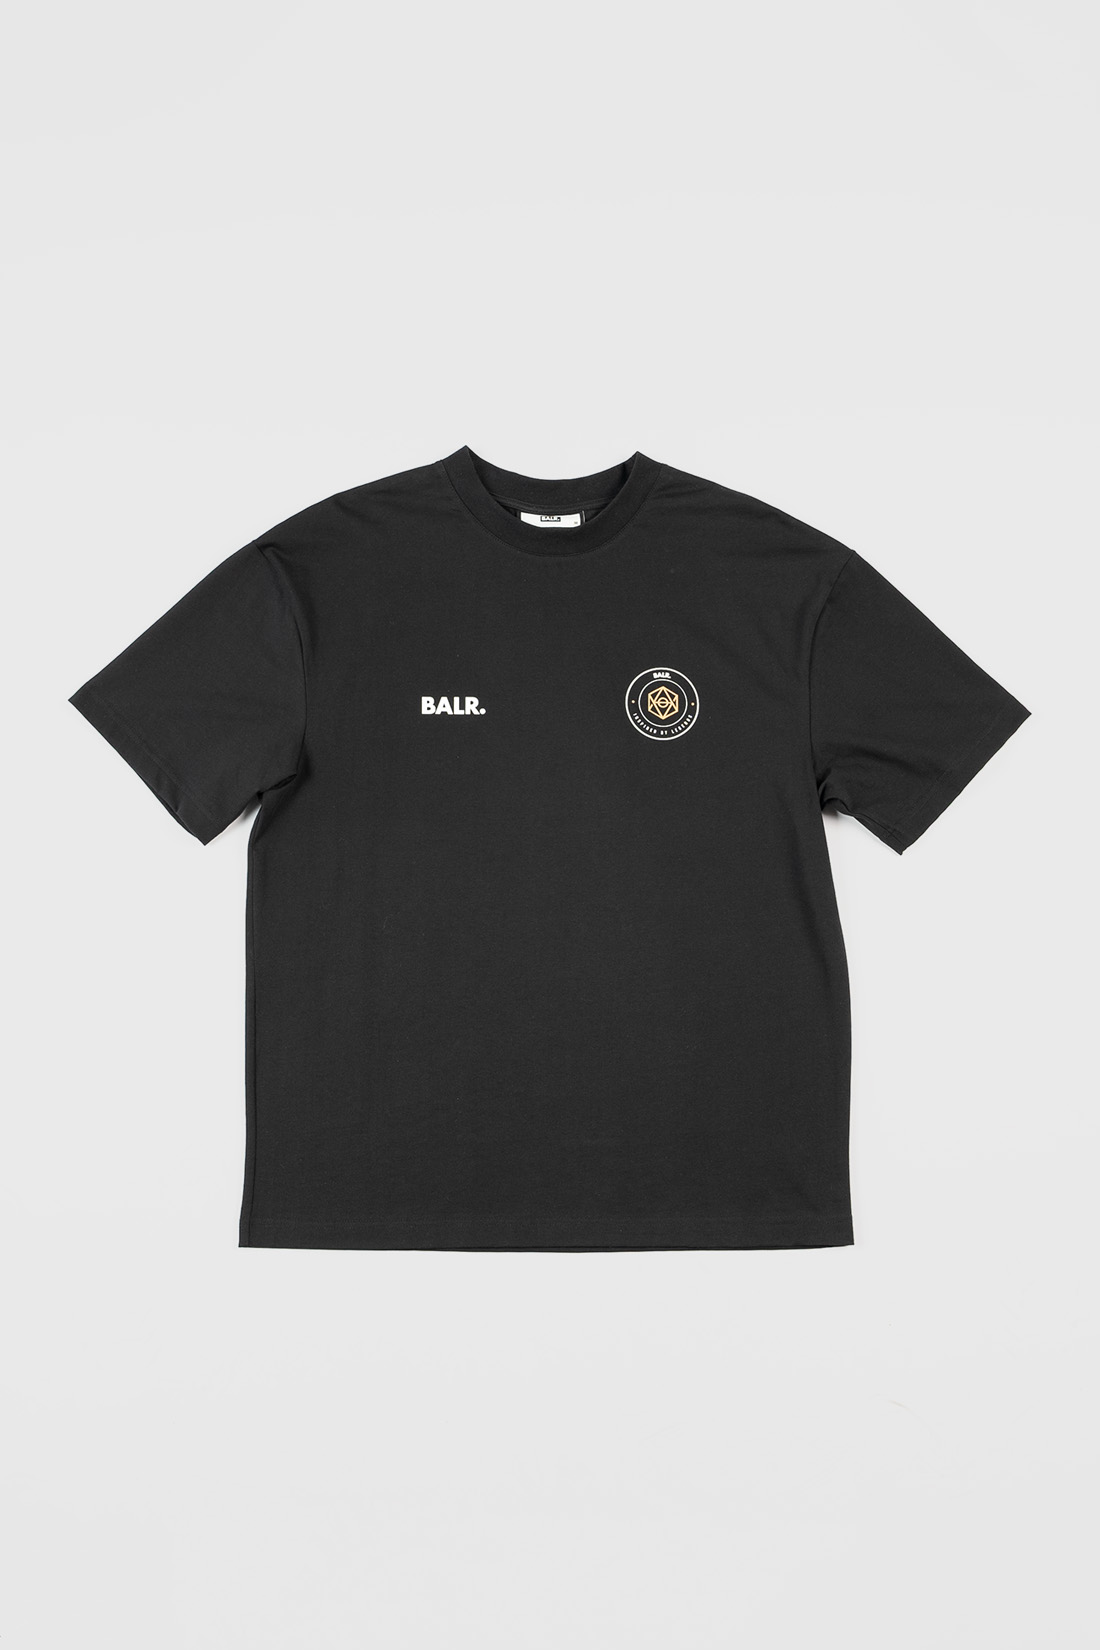 BALR. 10e Verjaardag T-Shirt Jet Black